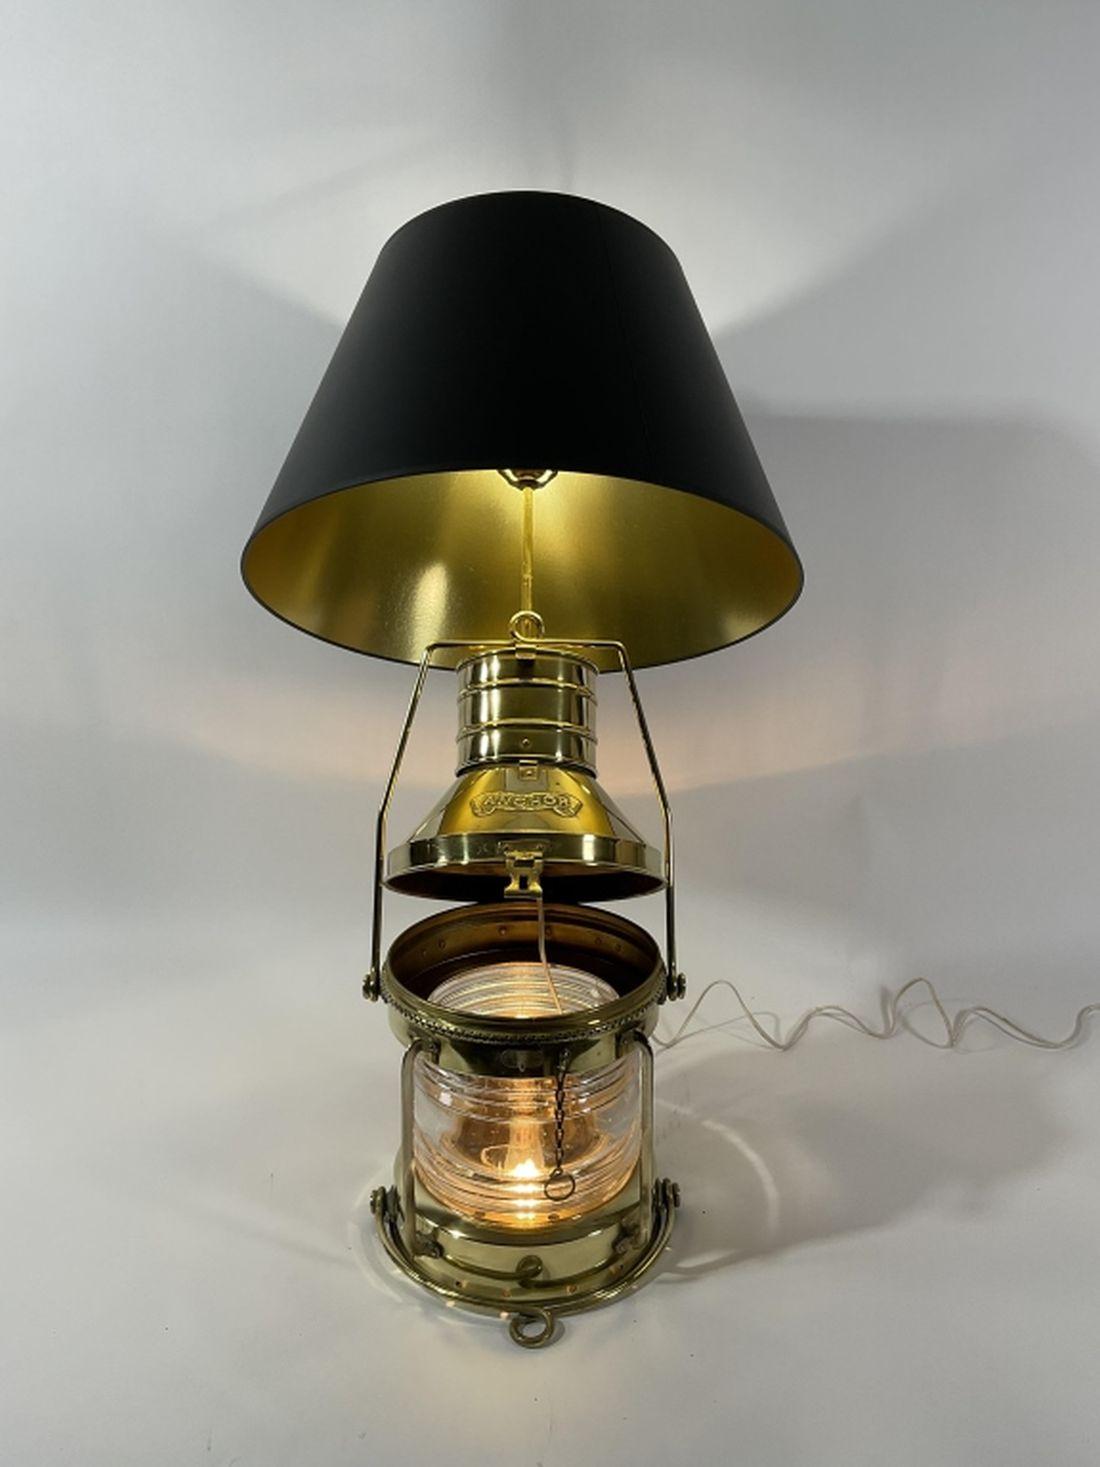 Ship Anchor Lantern With Fresnel Lens - Lannan Gallery